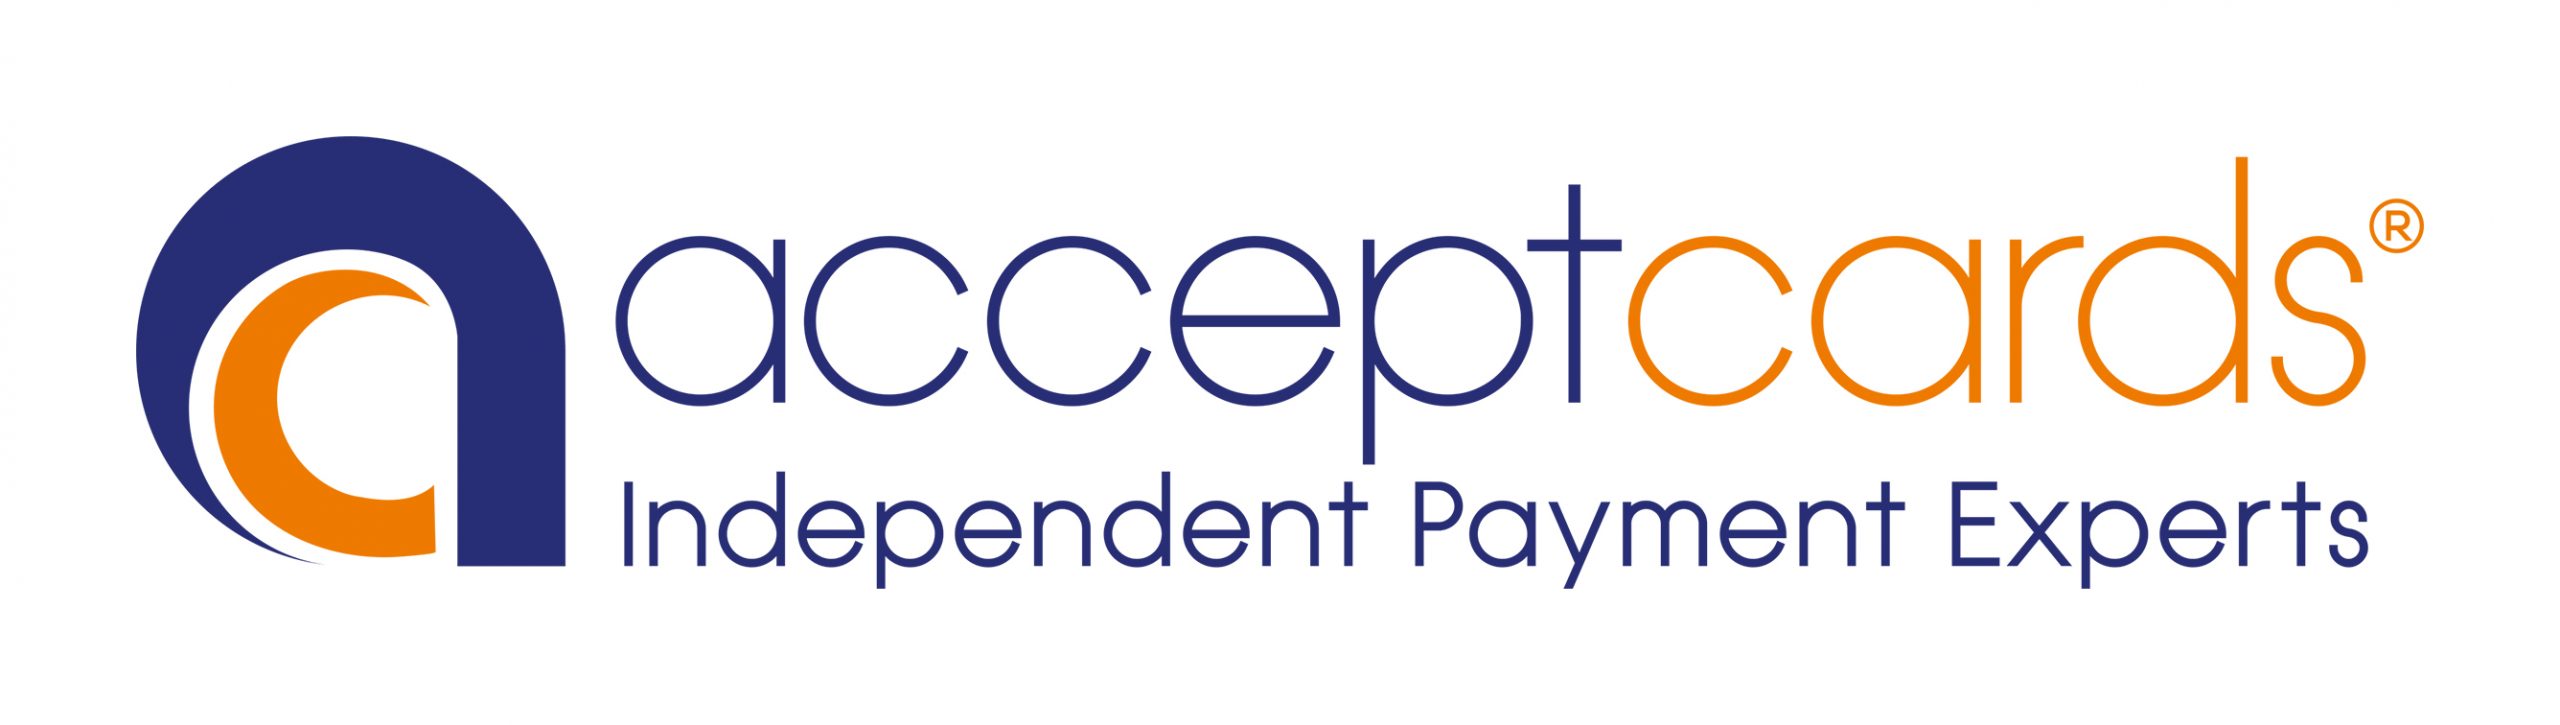 Accept cards logo